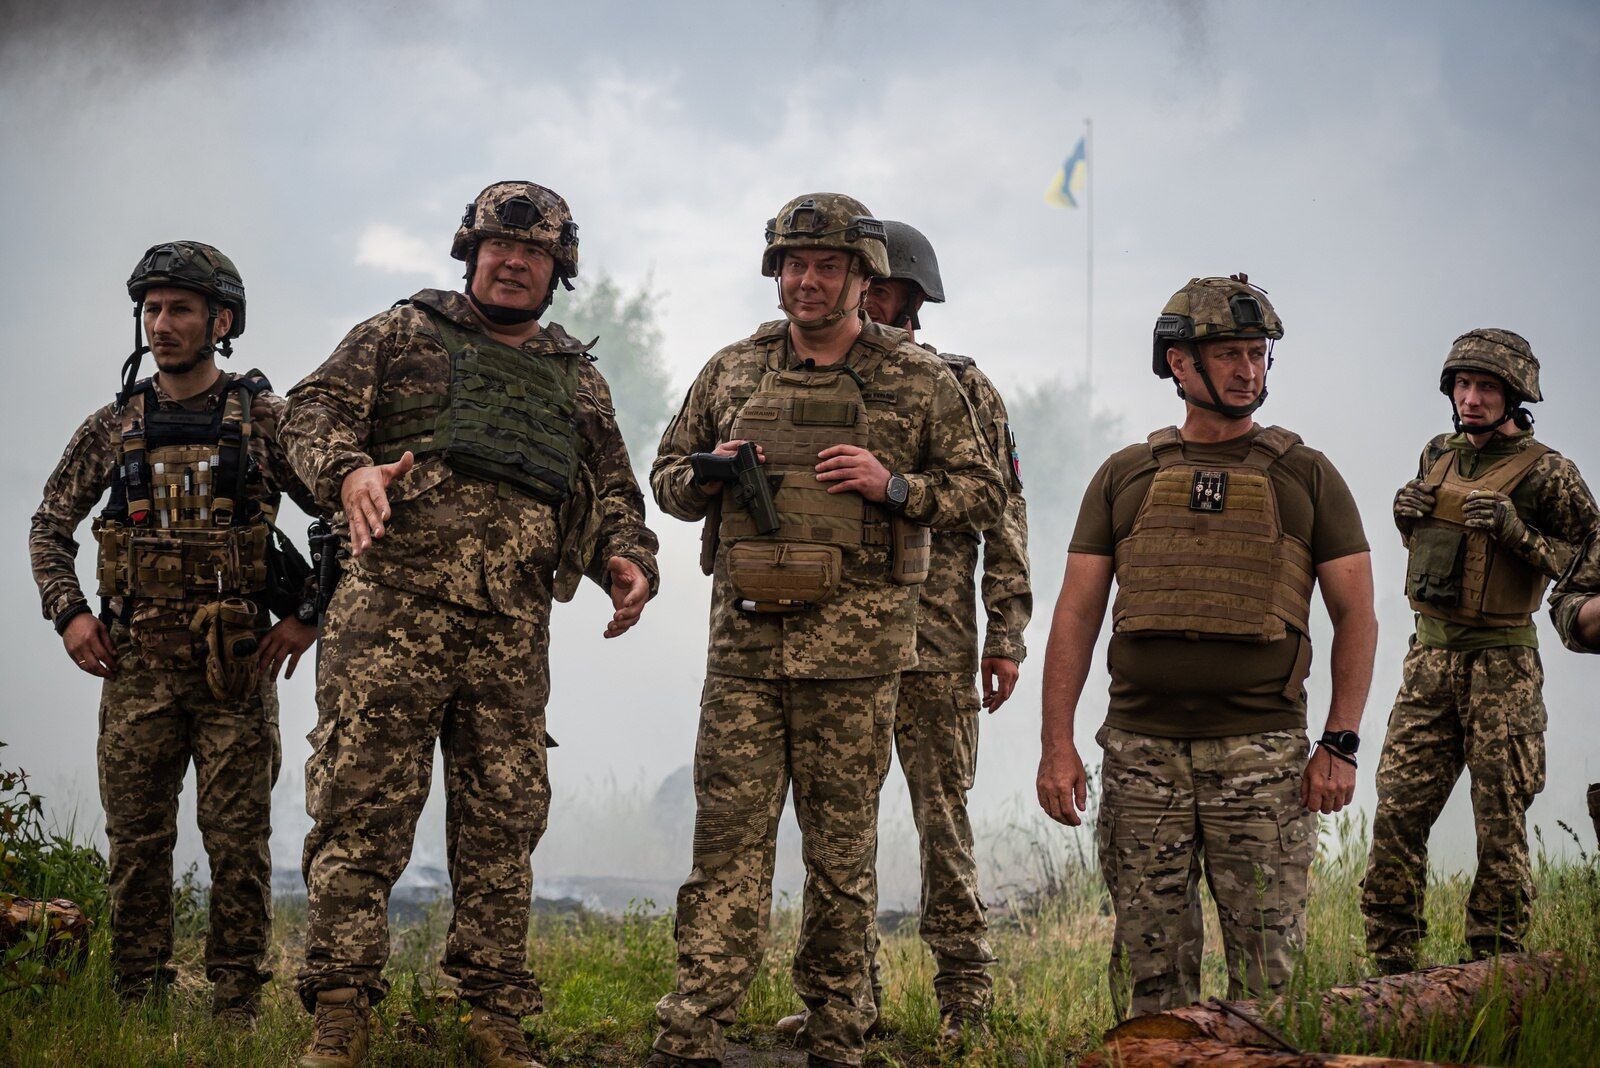 "Зачищали" здания от врага: Наев рассказал о тренировках украинских пехотинцев и назвал главную задачу. Фото и видео